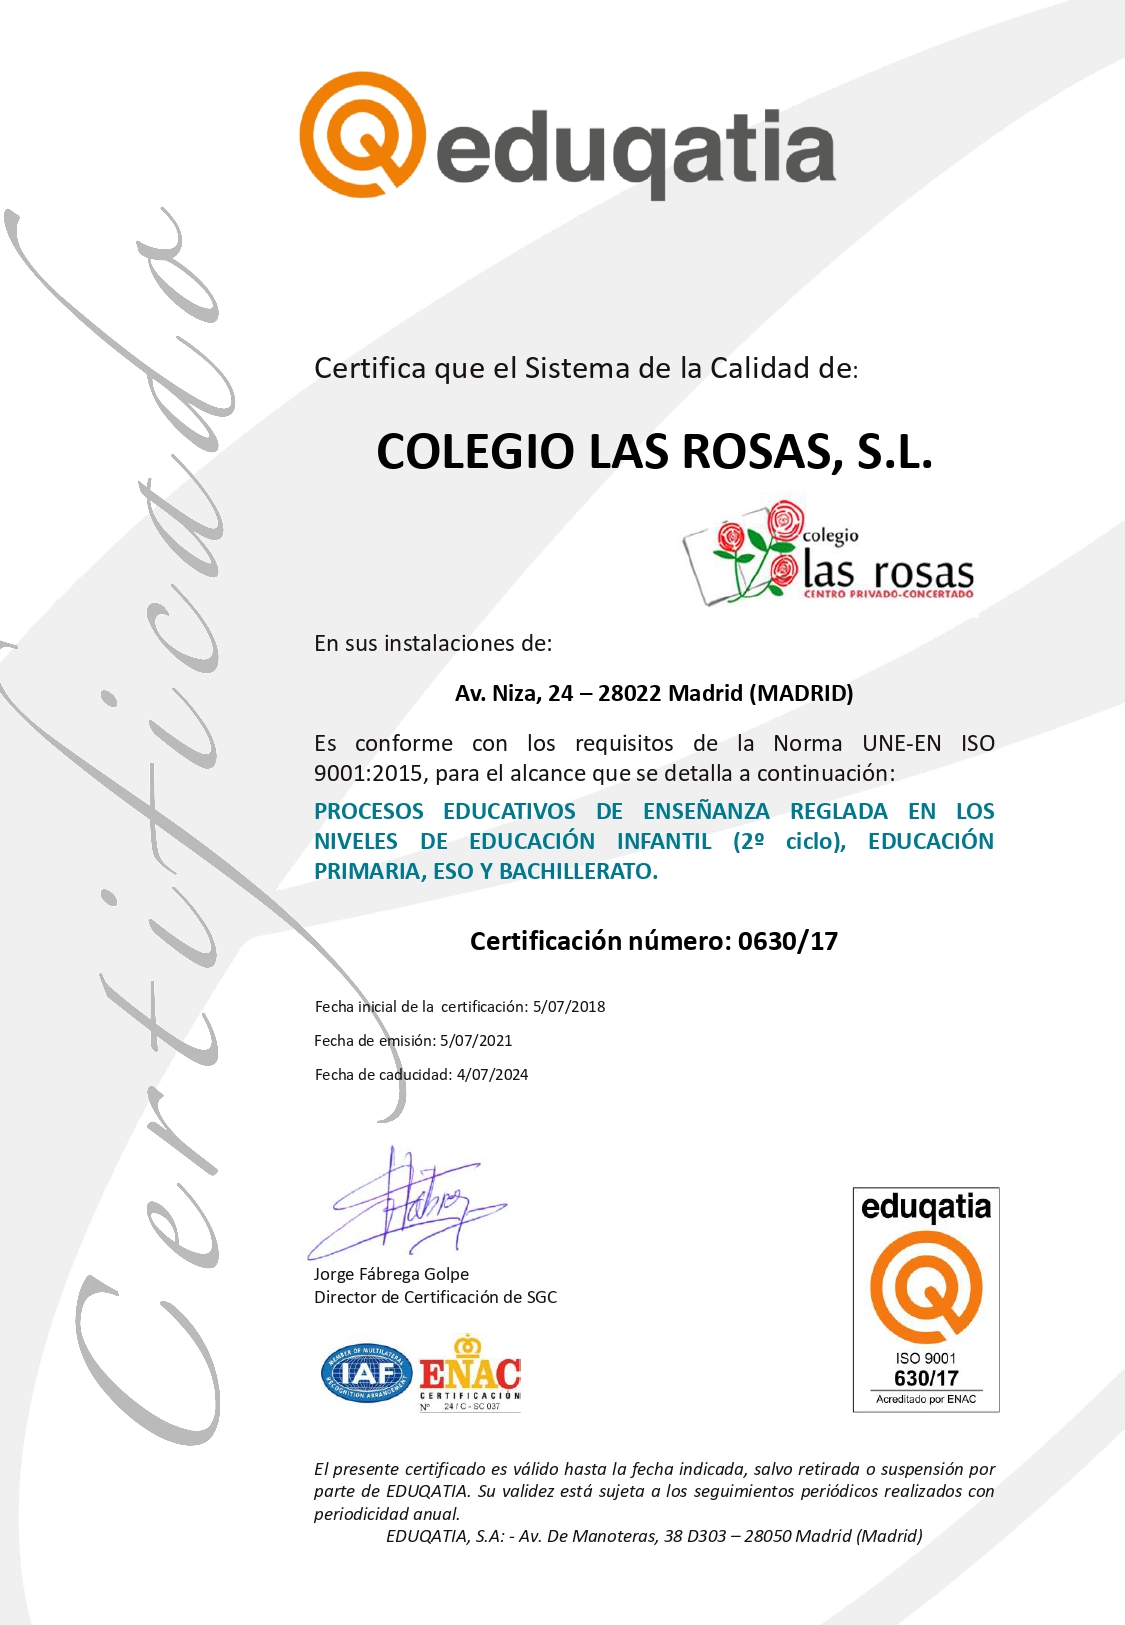 EDUQATIA-ISO9001-630-17